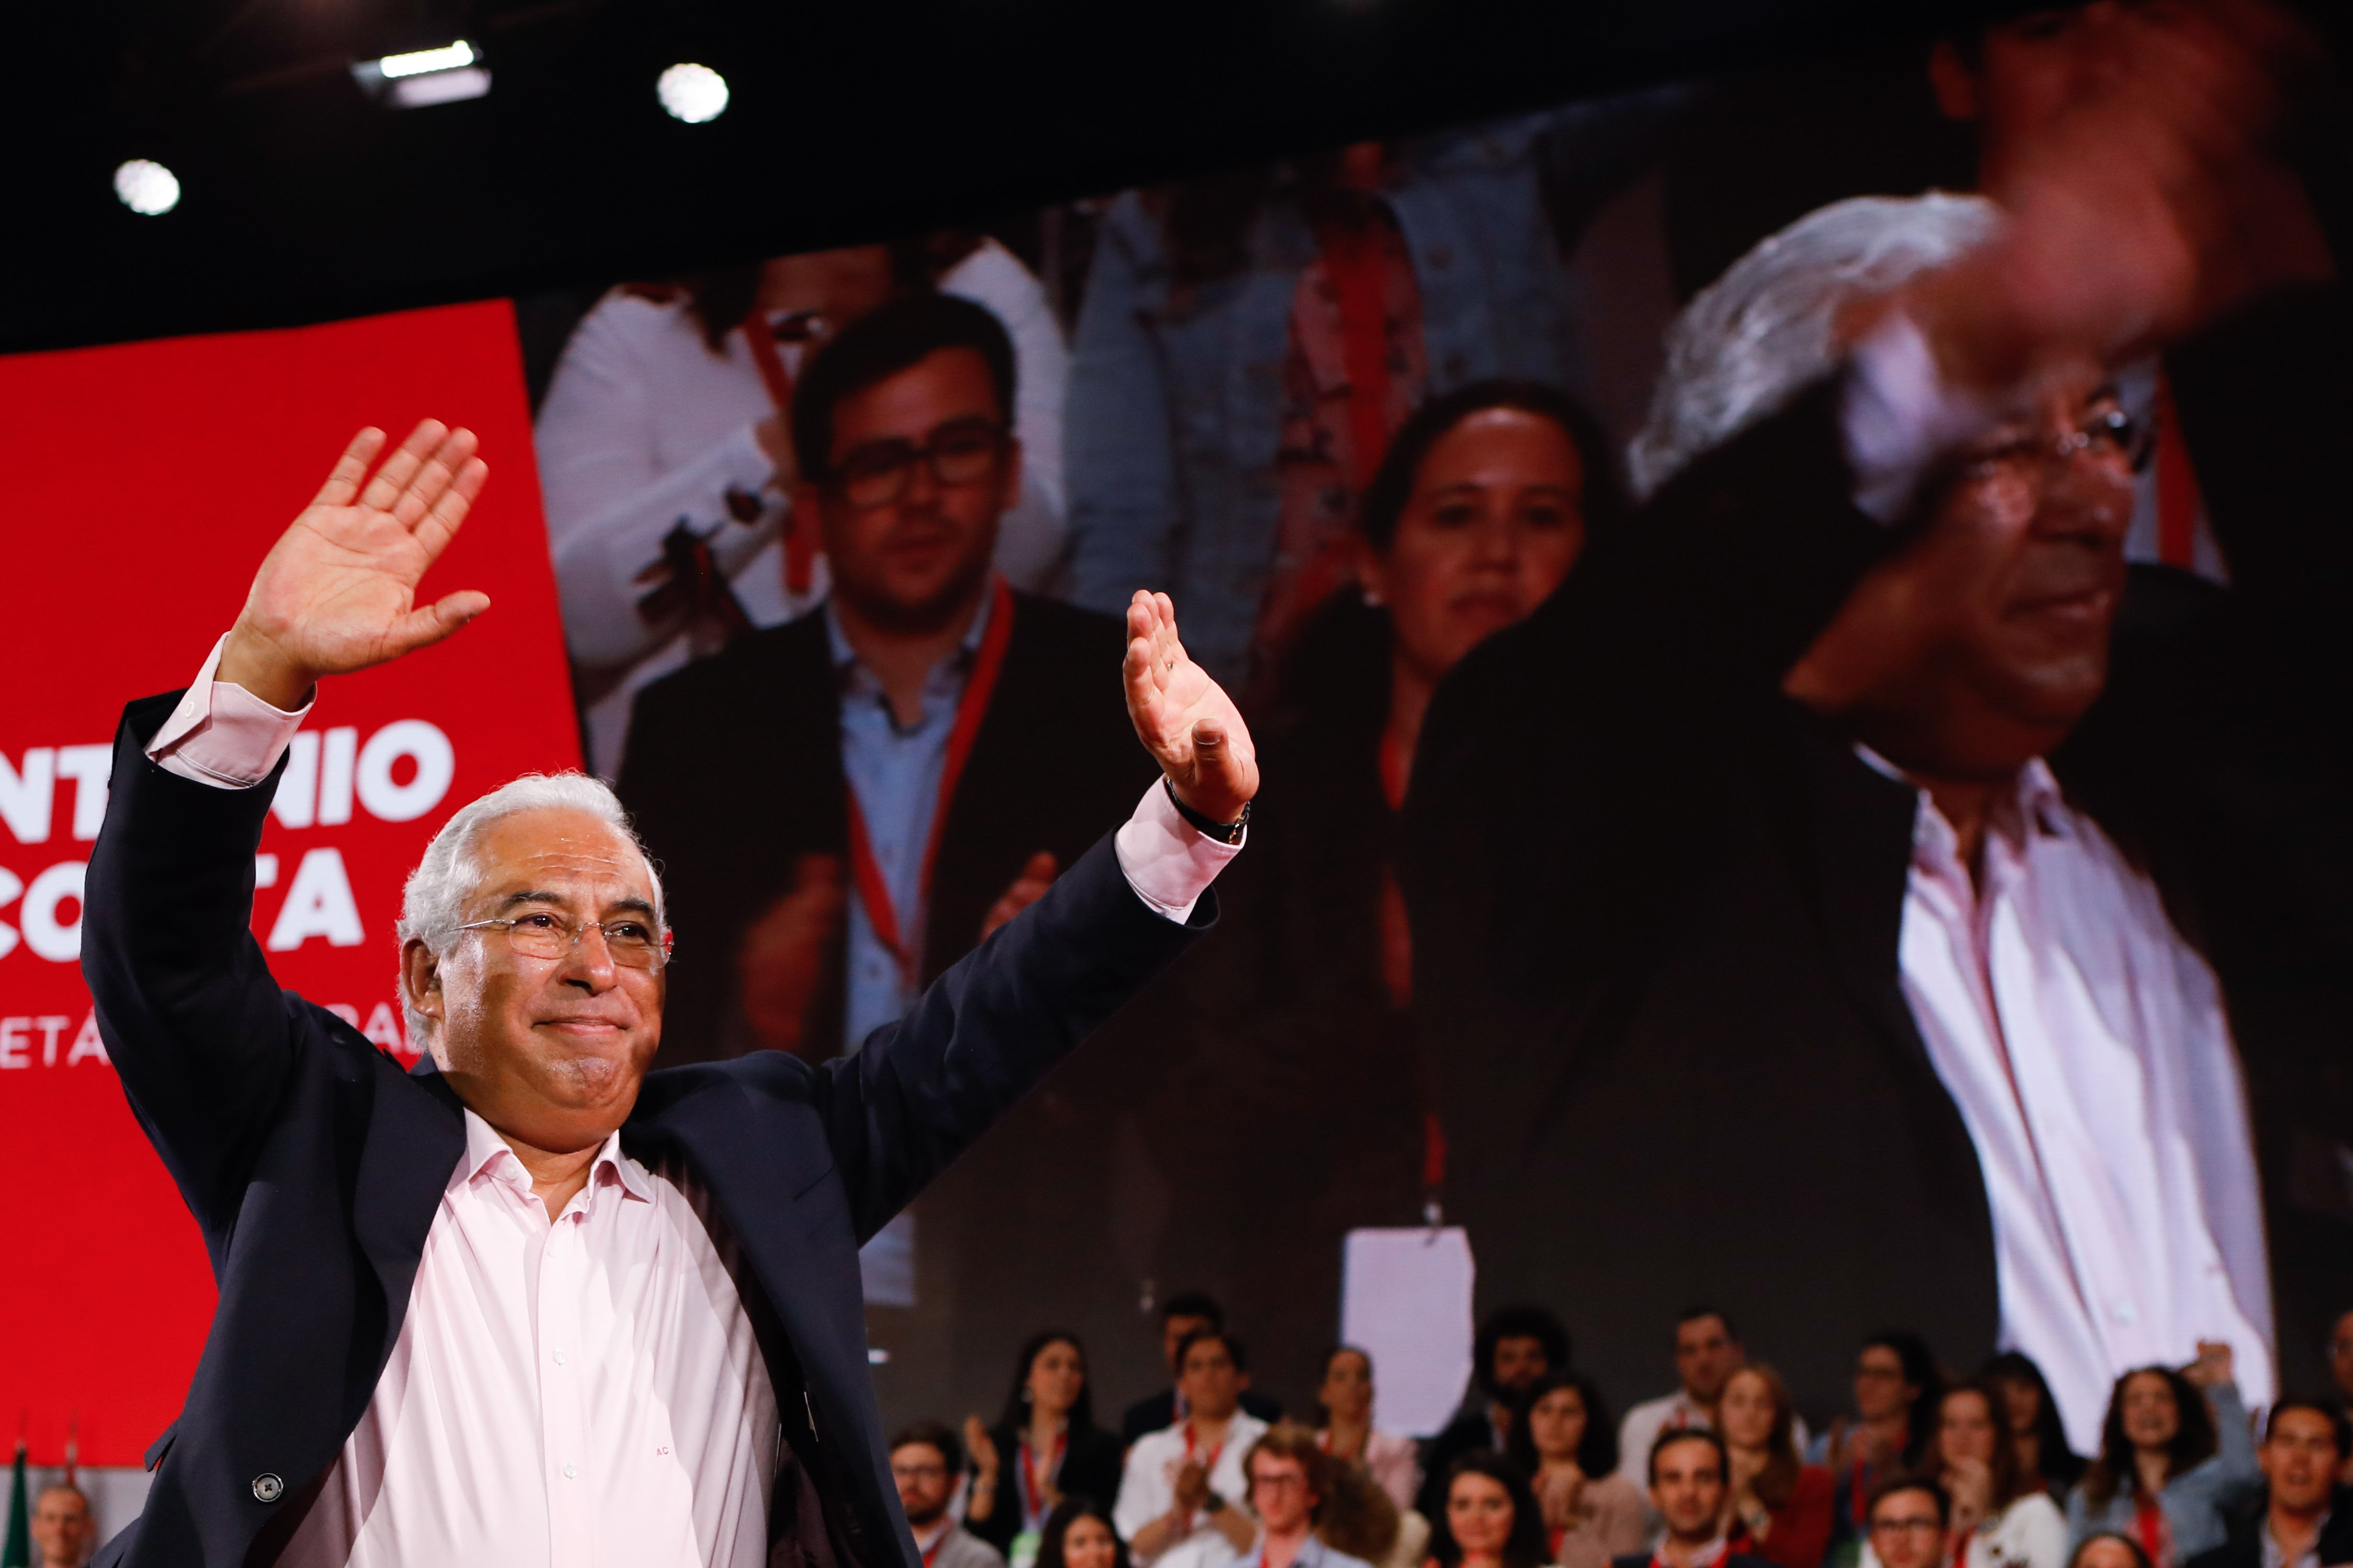 Costa confiante em vitória inédita na Madeira e abre porta aos jovens socialistas